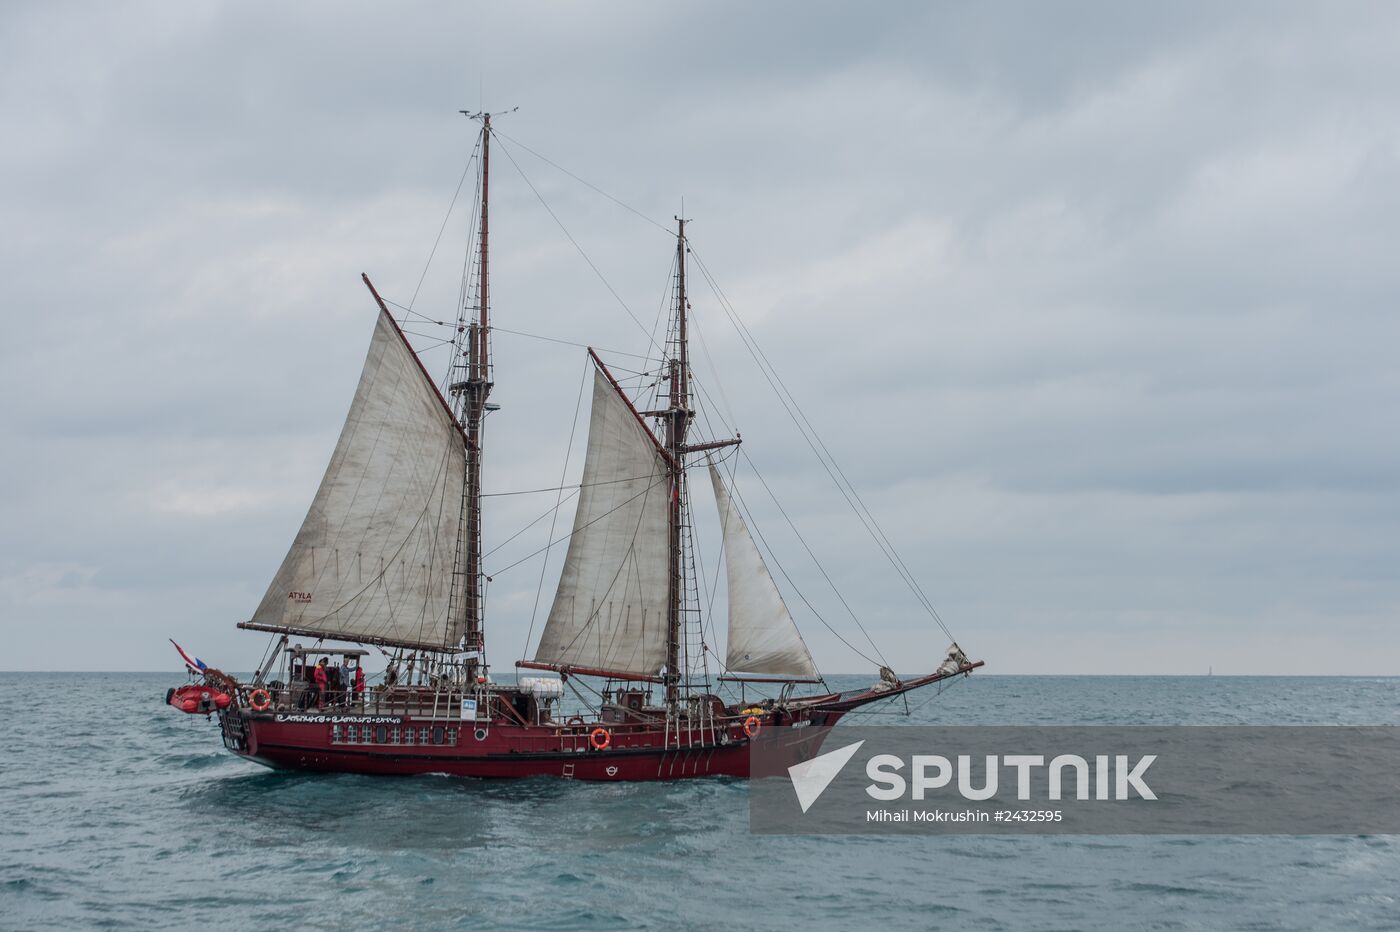 The Black Sea tall ships regatta in Sochi